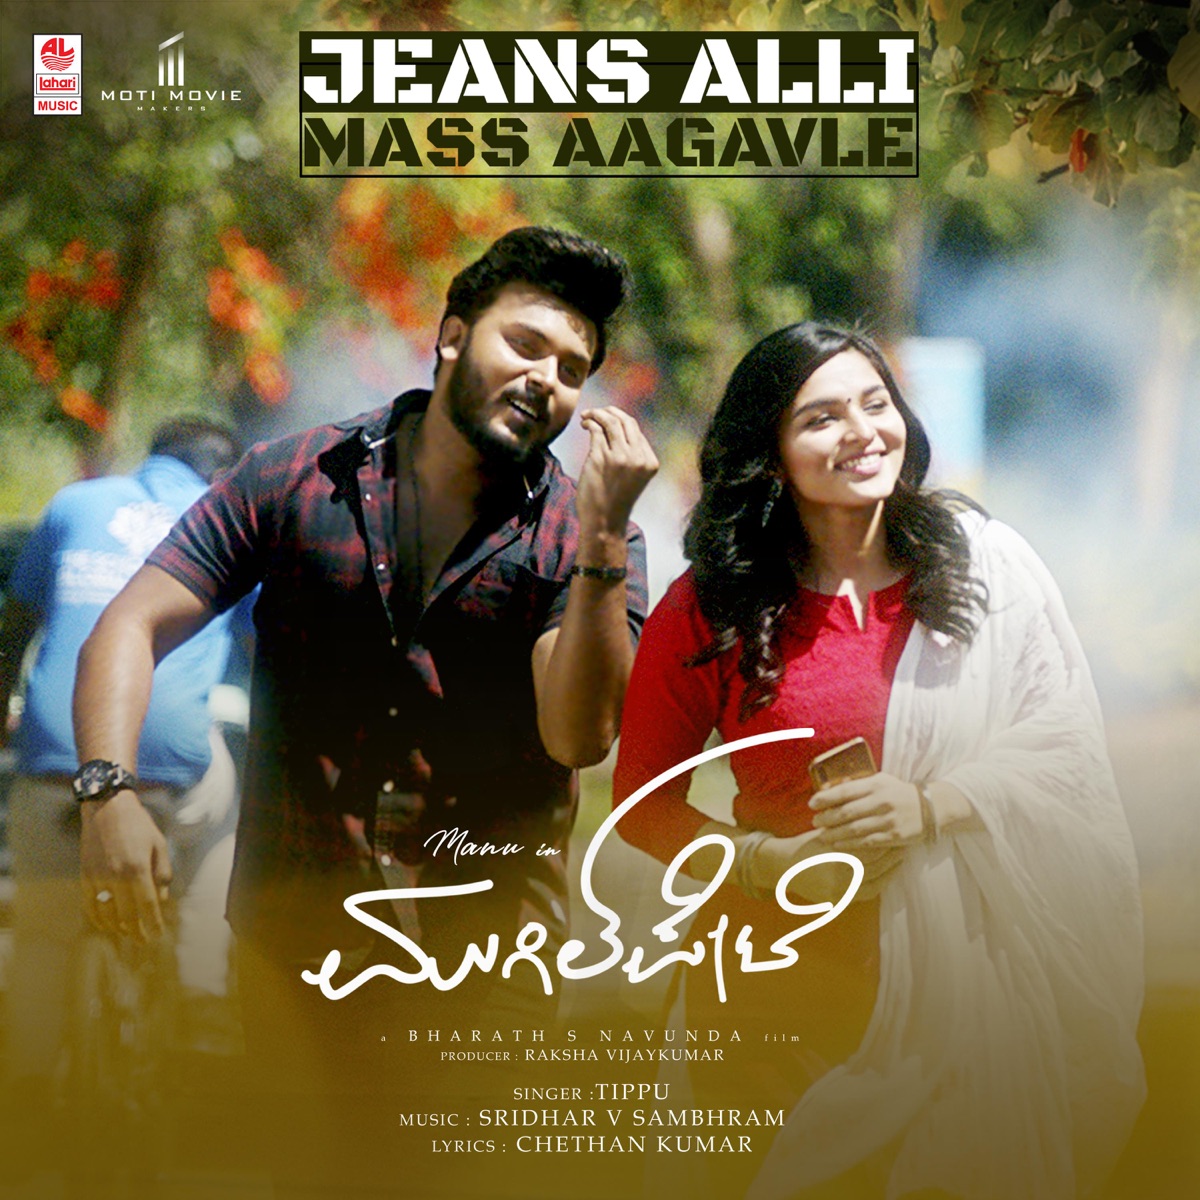 Jeans Alli Mass Aagavle (From "Mugilpete") - Single by Tippu & Sridhar V.  Sambhram on Apple Music